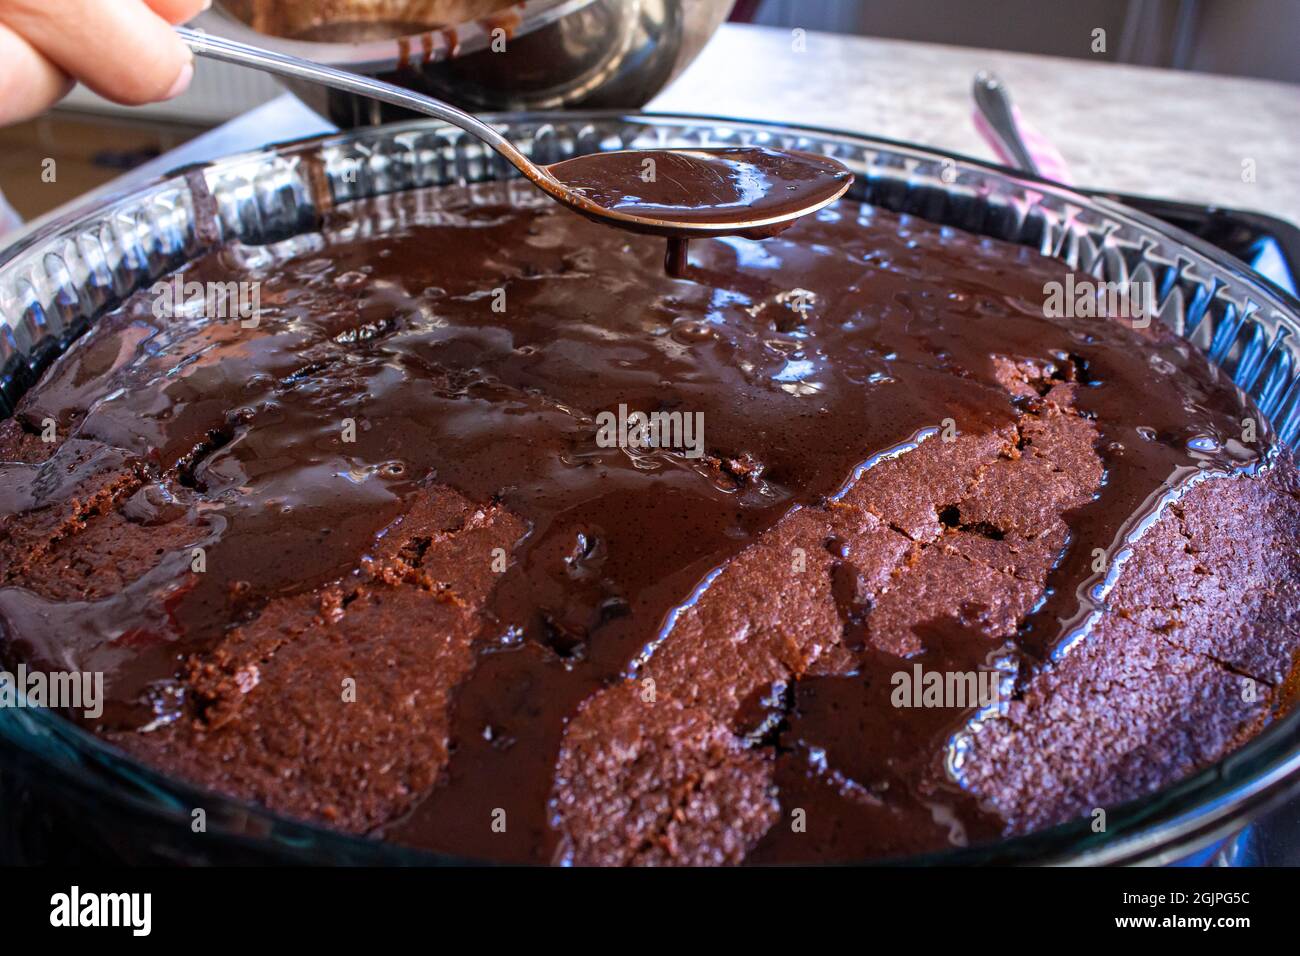 Junge Frau gießt Schokoladenpraline auf hausgemachten Kuchen. Kochen hausgemachter Desserts. Stockfoto